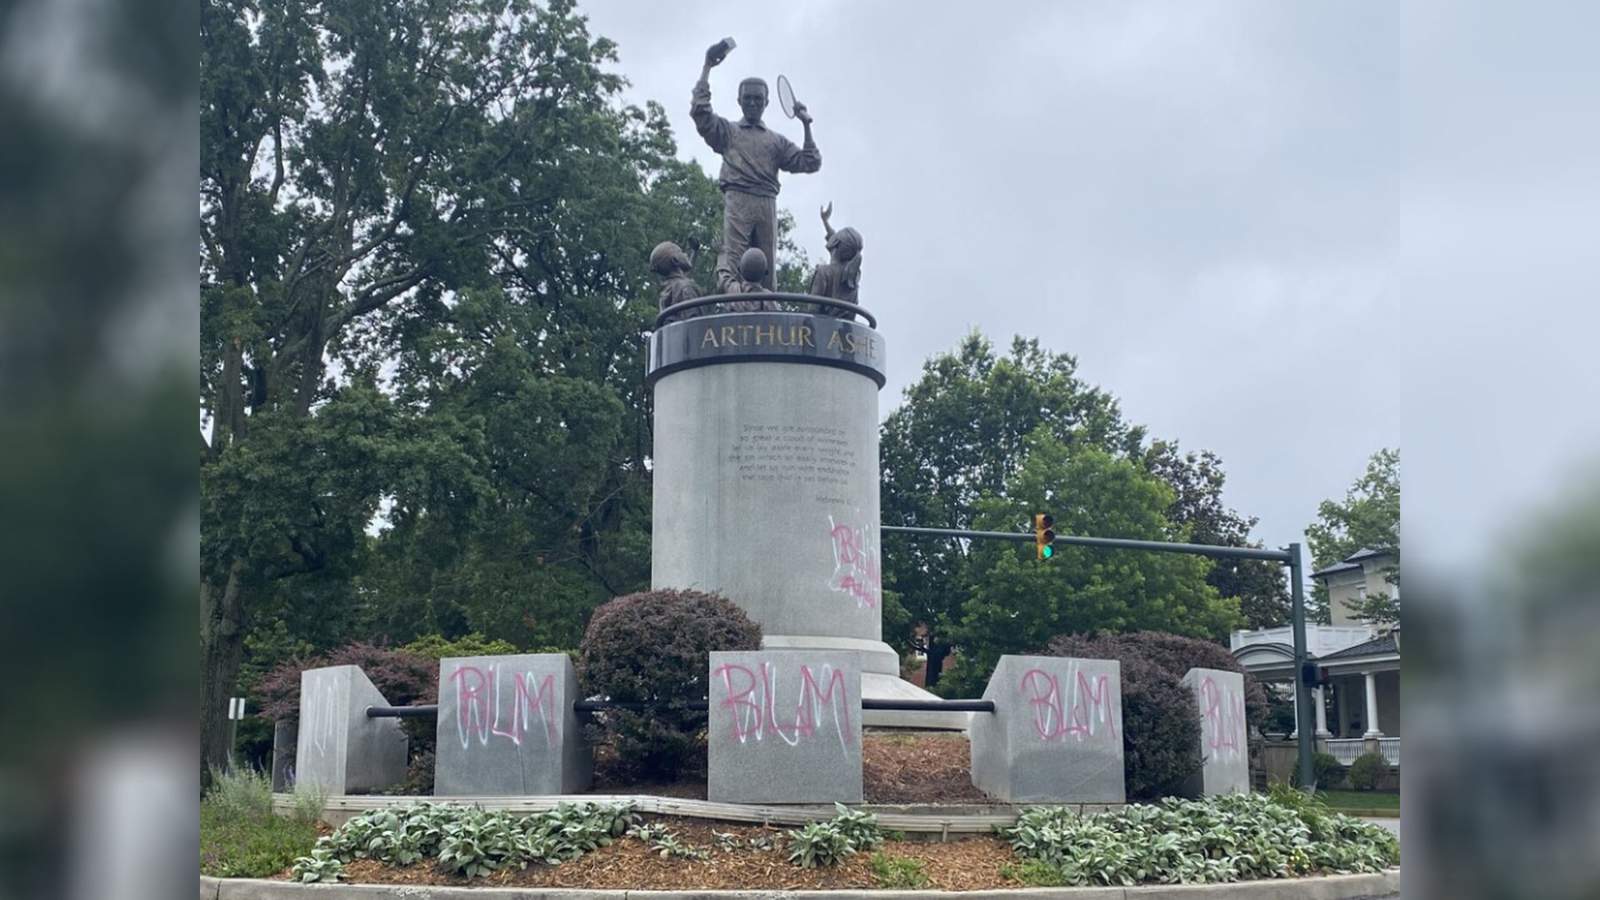 ‘White Lives Matter’ sprayed on Richmond’s Arthur Ashe memorial